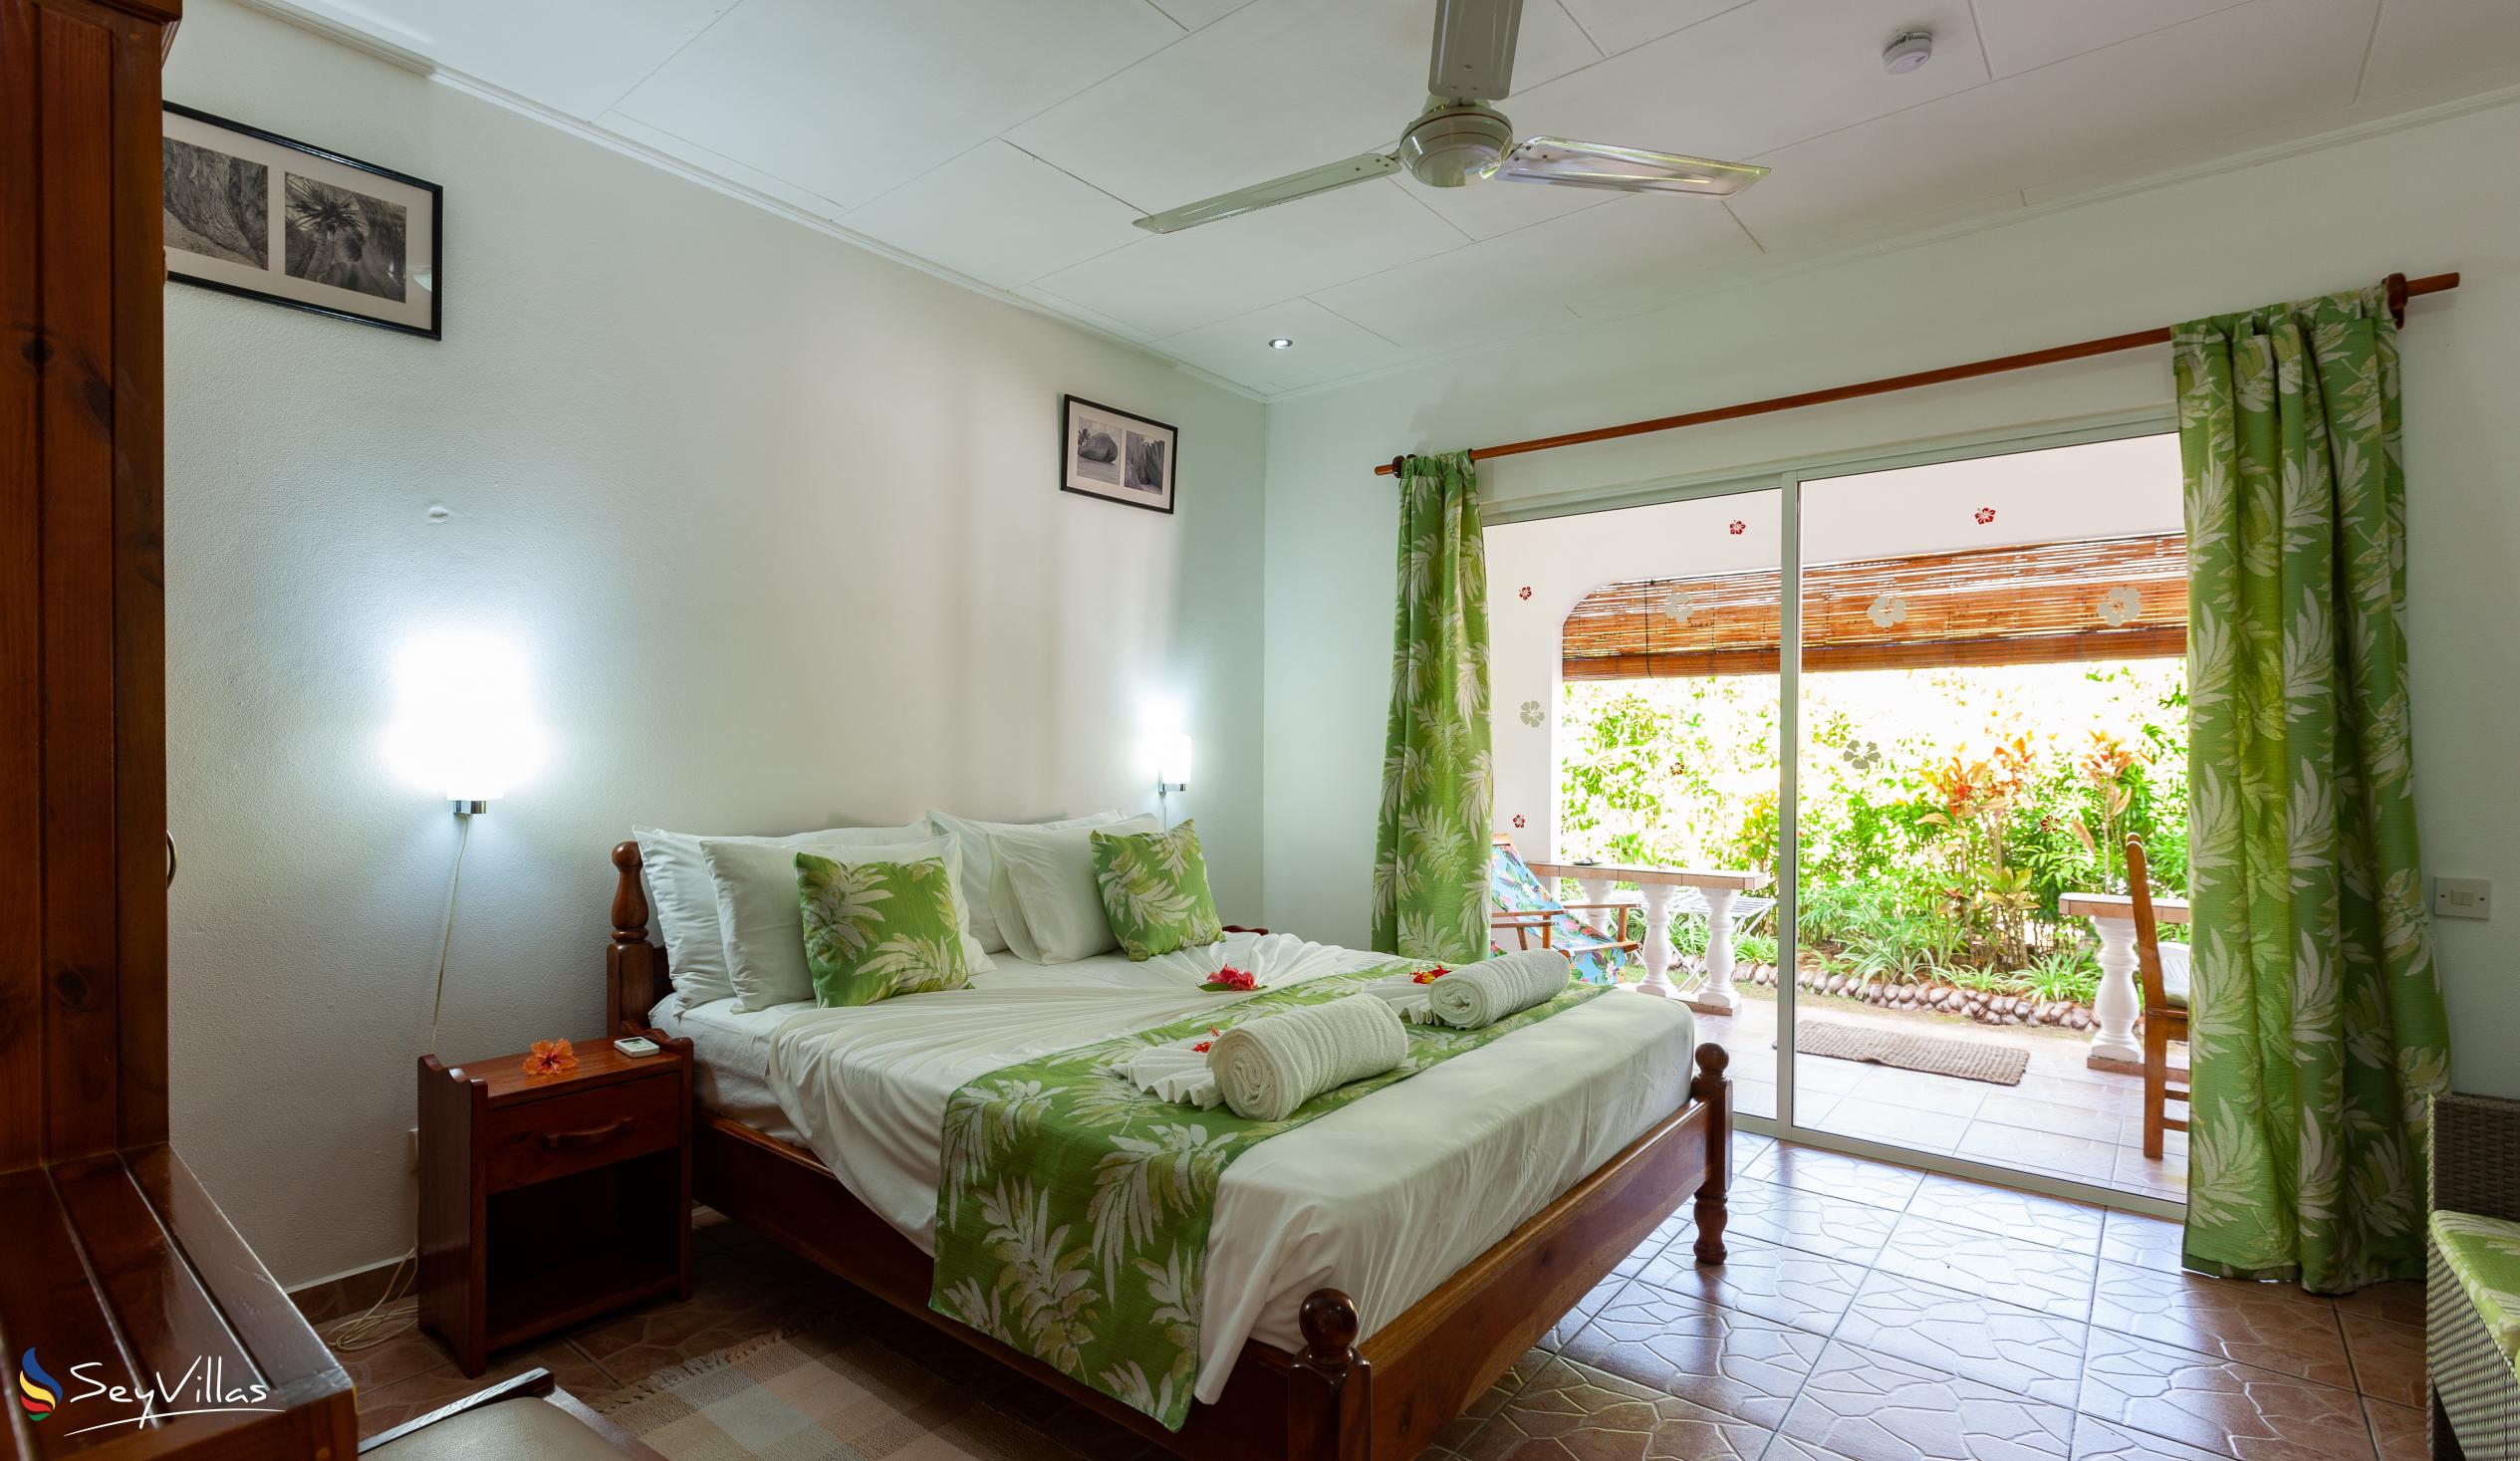 Photo 56: Pension Hibiscus - Maison Eliza - Standard Room - La Digue (Seychelles)